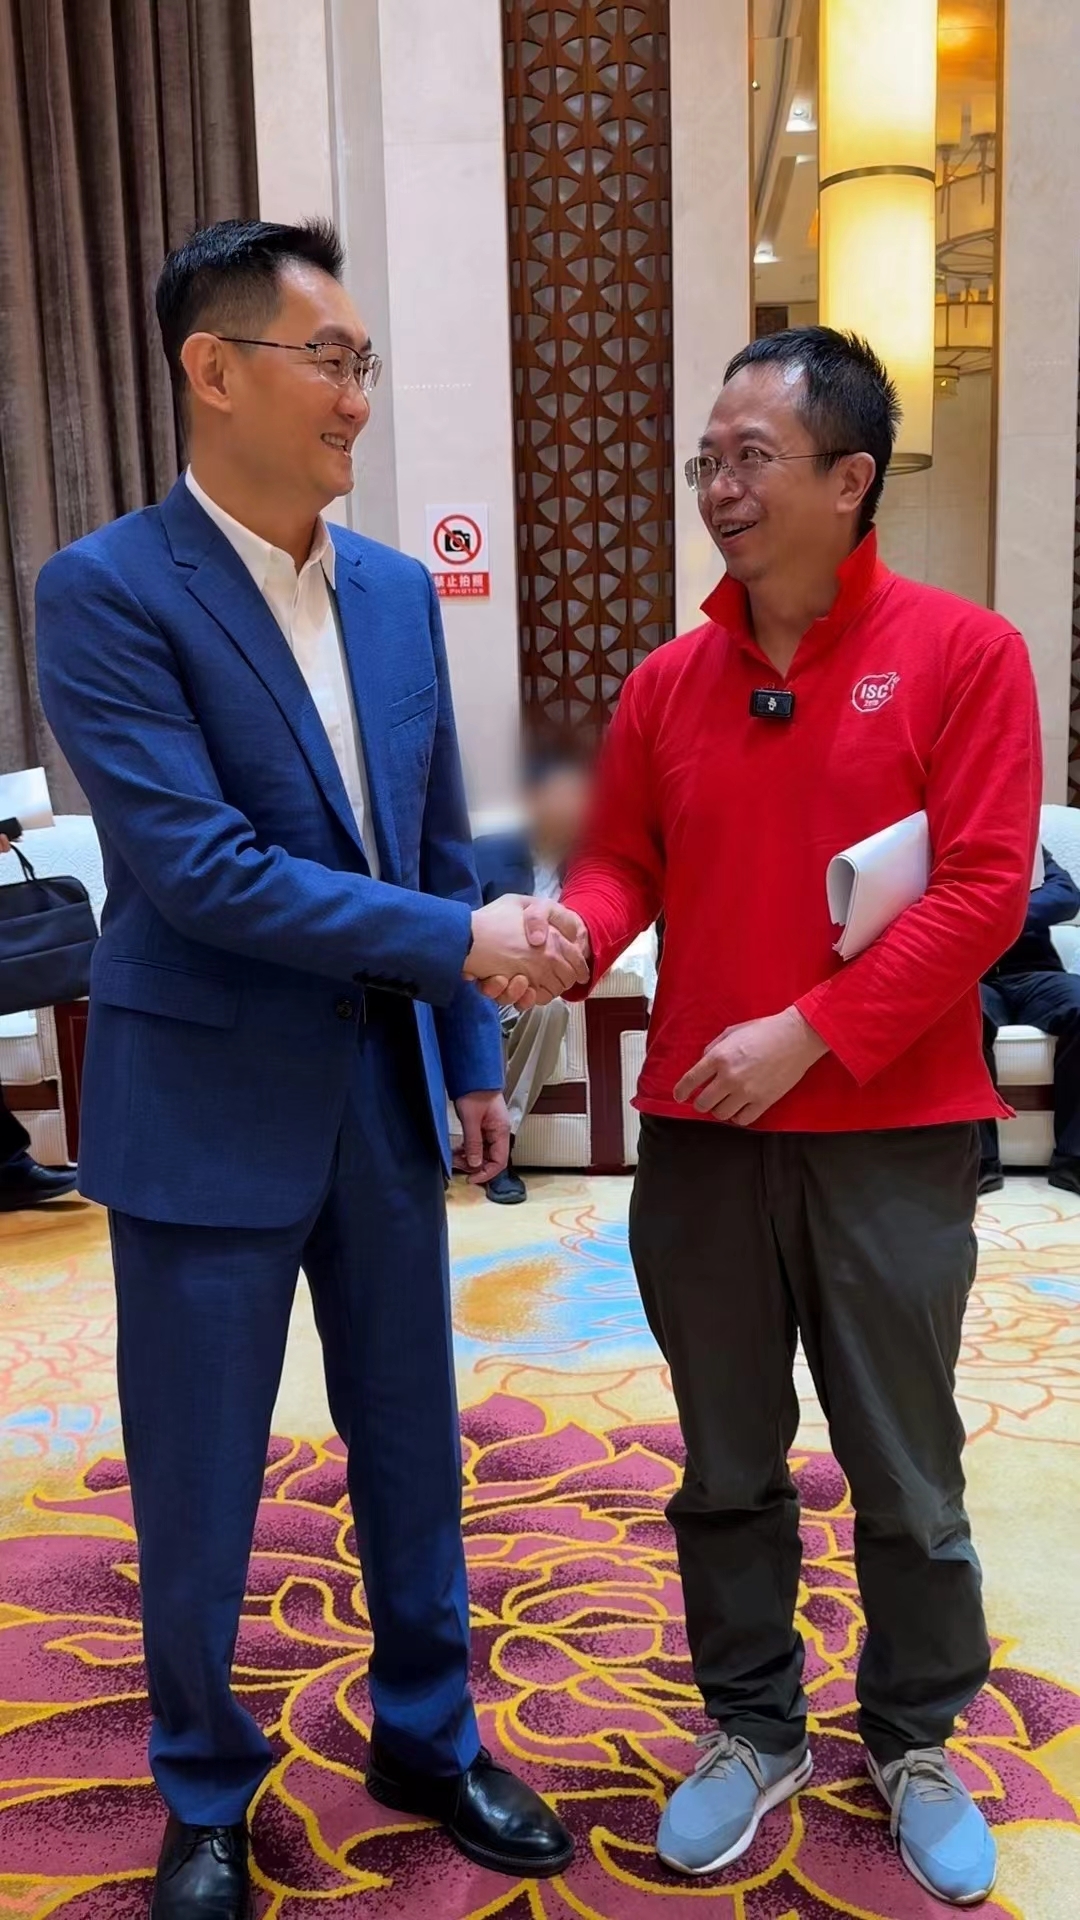 中国网路30周年，周鸿祎（右）称见到老朋友马化腾（左），马化腾夸他当网红短视频拍得不错。（取材自微博）